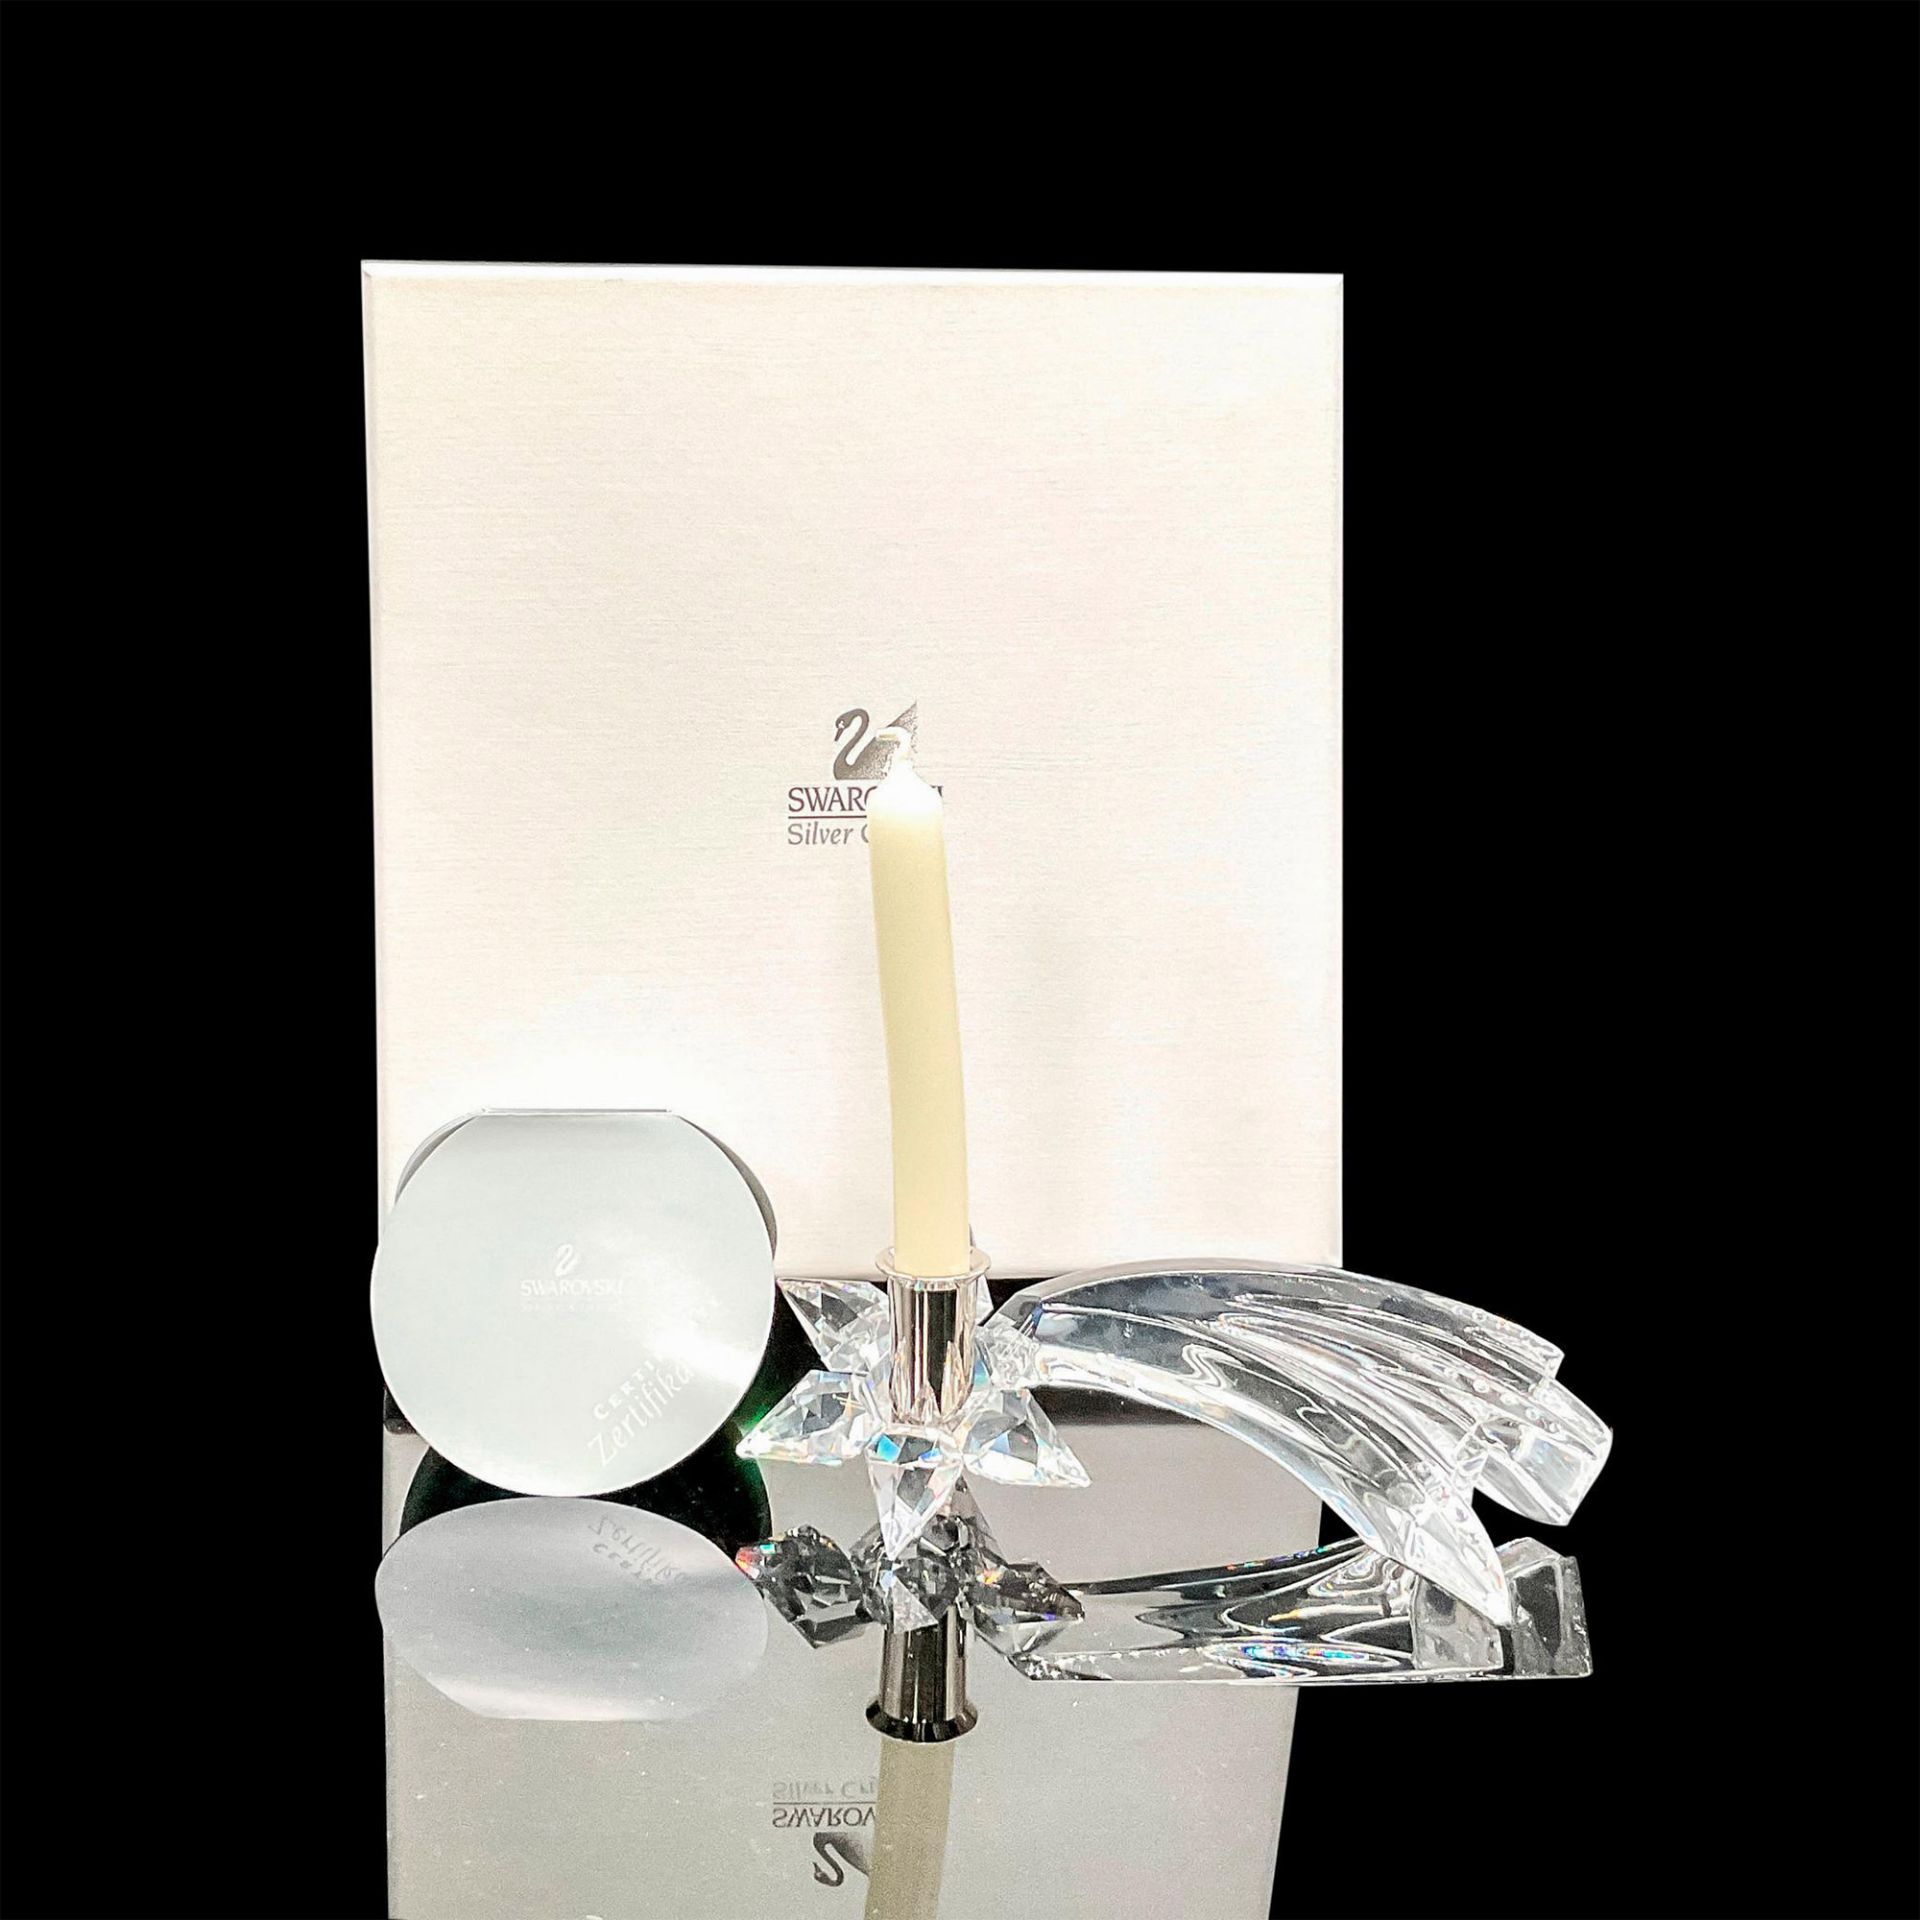 Swarovski Silver Crystal Comet Candleholder - Image 4 of 4